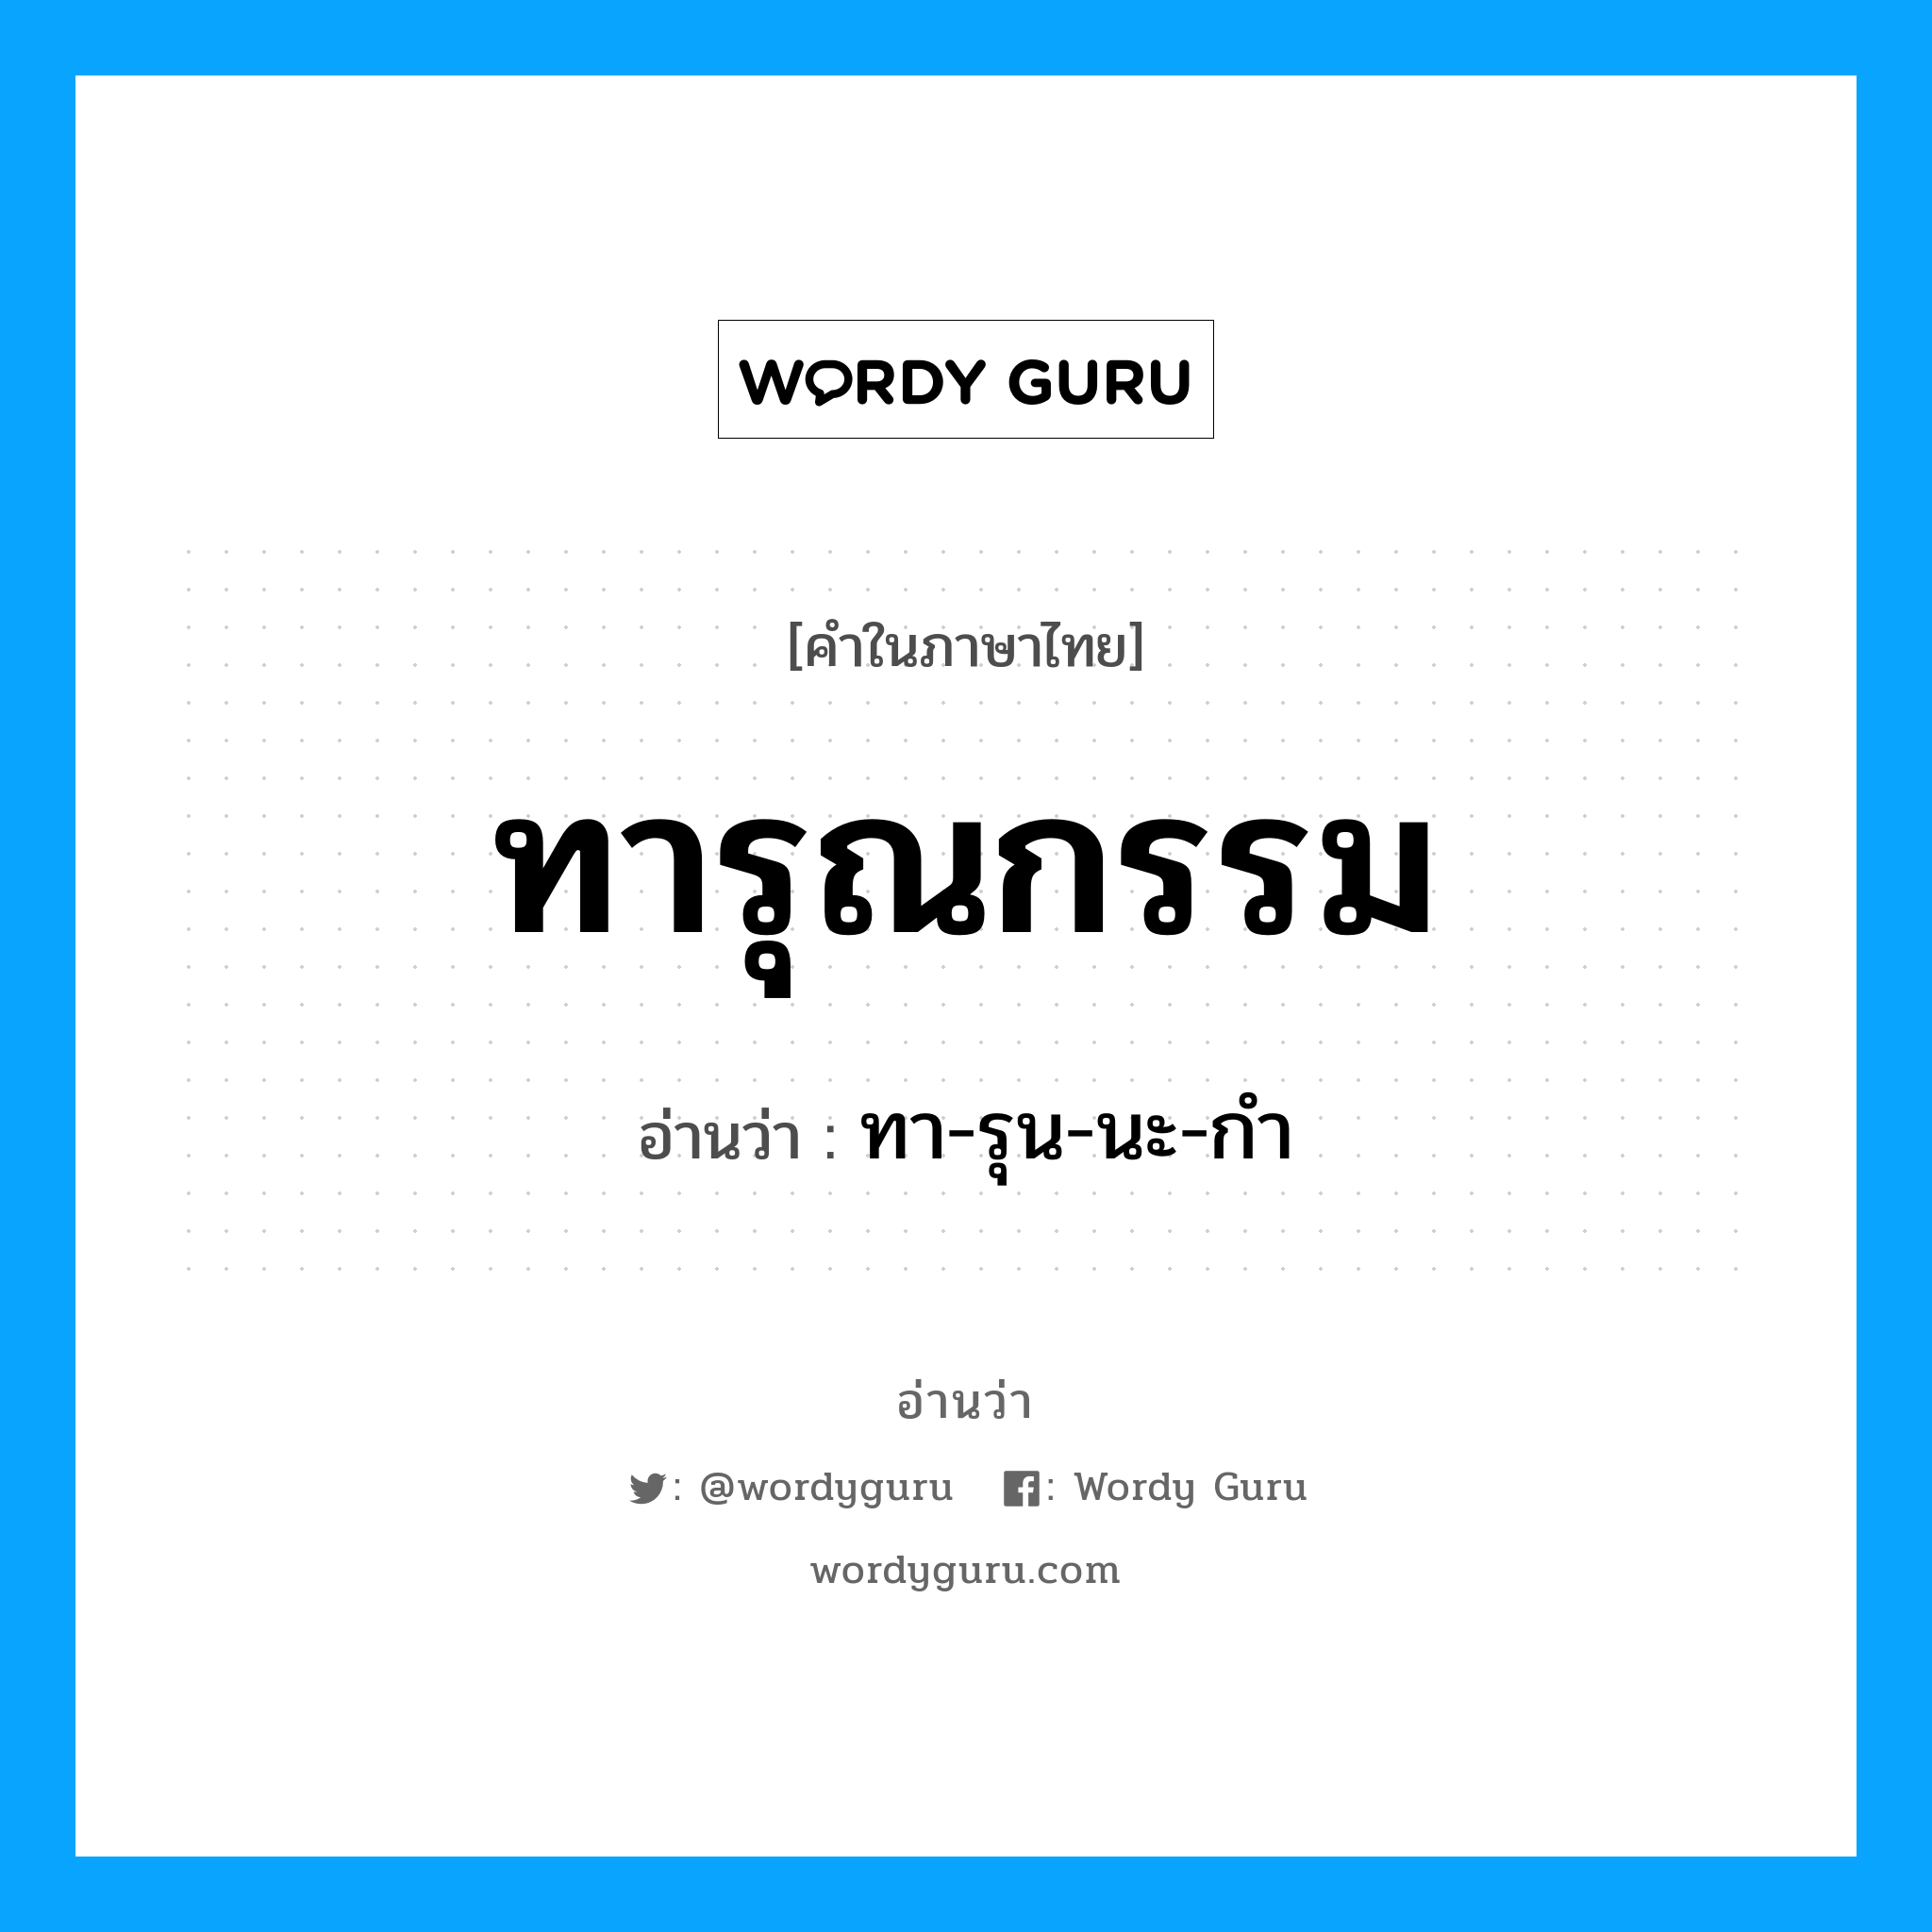 ทา-รุน-นะ-กำ เป็นคำอ่านของคำไหน?, คำในภาษาไทย ทา-รุน-นะ-กำ อ่านว่า ทารุณกรรม